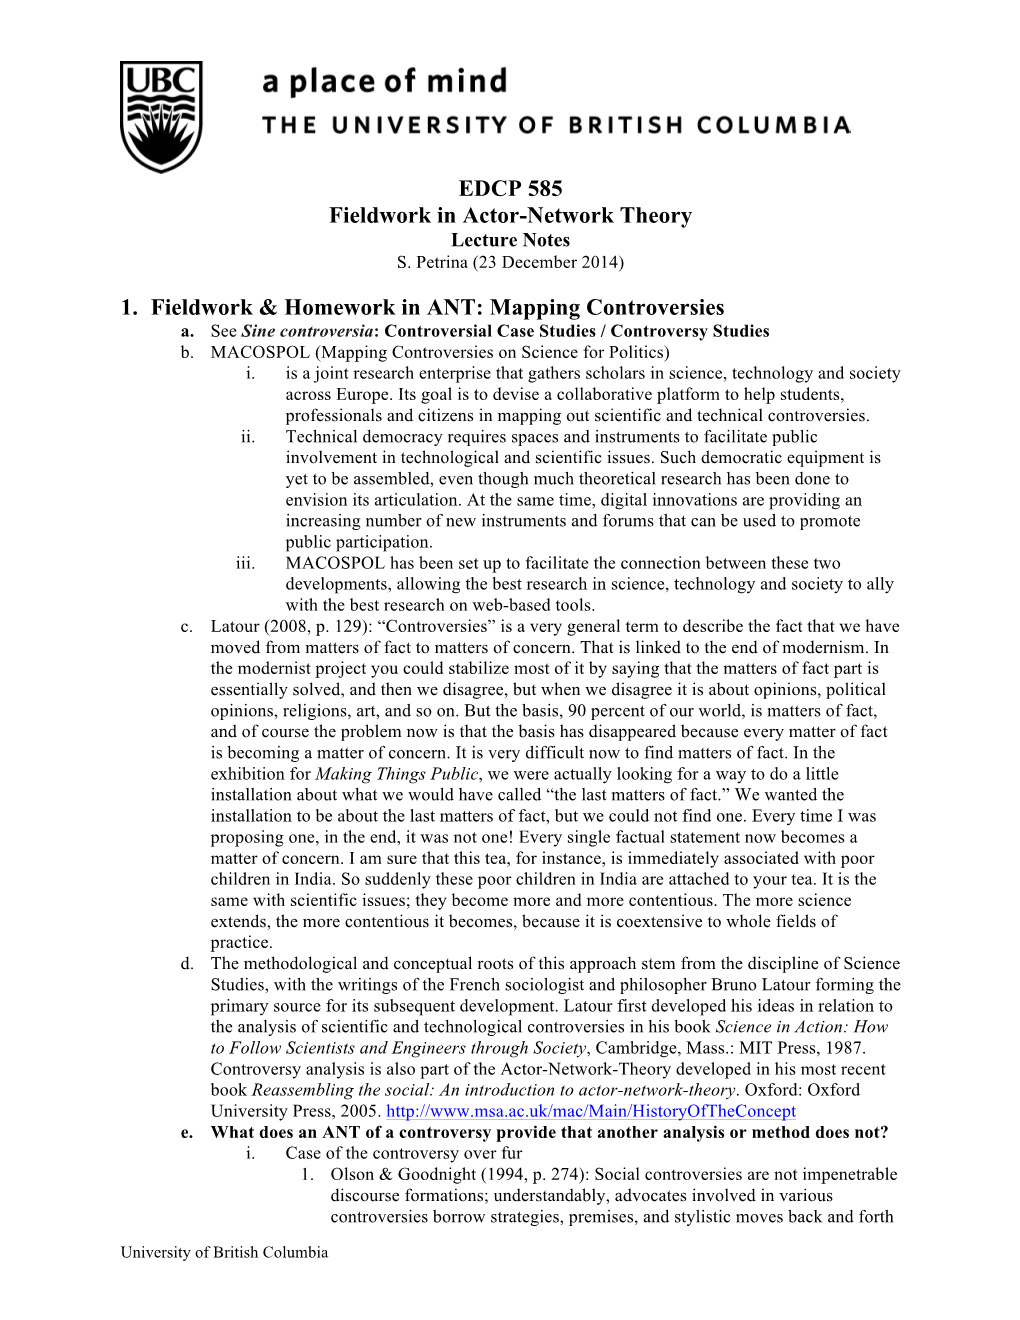 EDCP 585 Fieldwork in Actor-Network Theory 1. Fieldwork